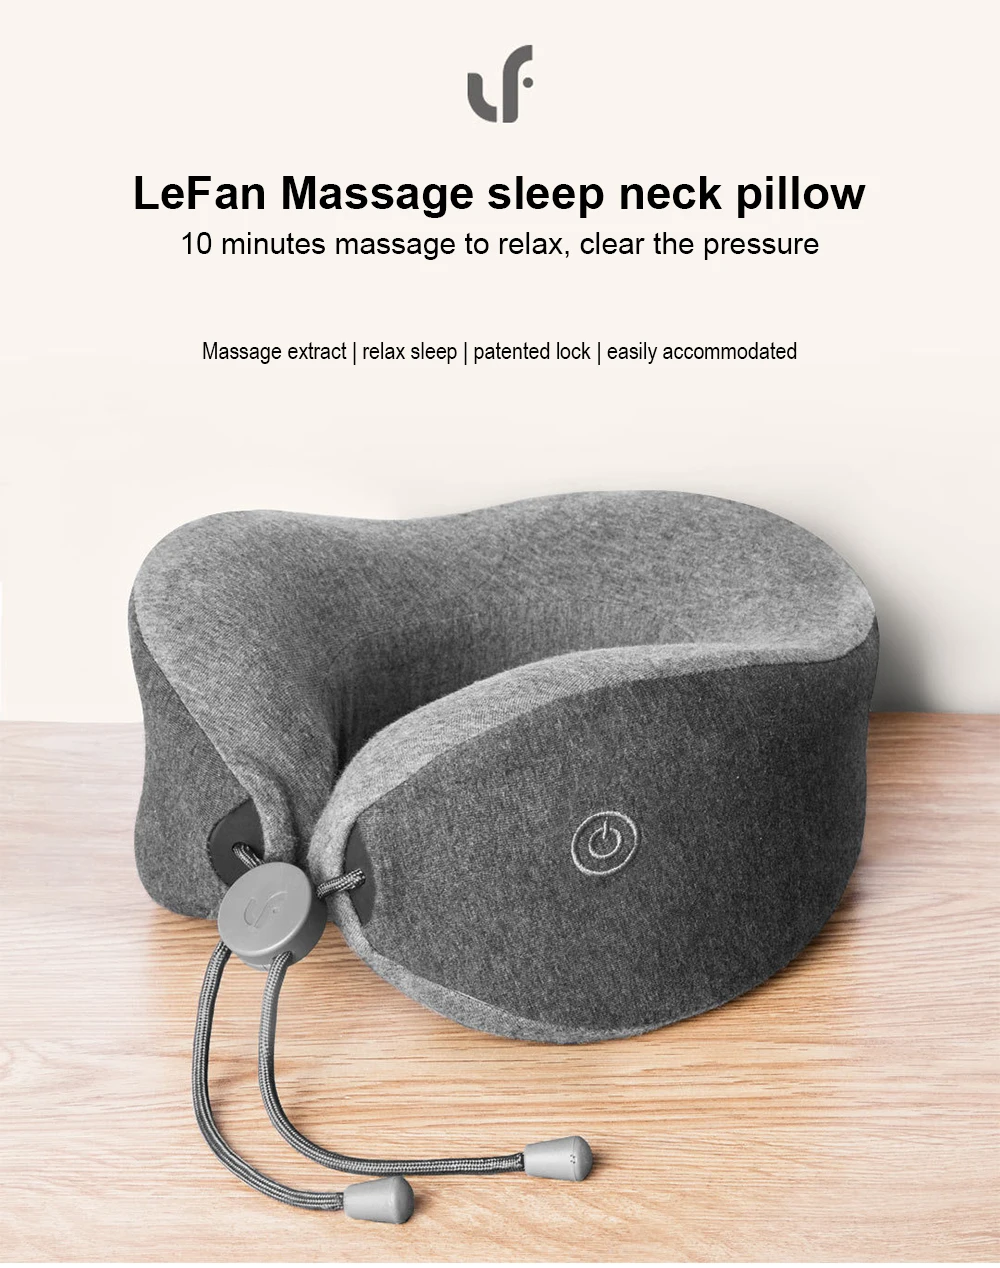 Оригинальная Массажная подушка для шеи Xiaomi Mijia LF, массажер для расслабления мышц, Подушка для сна для офиса, дома, путешествий